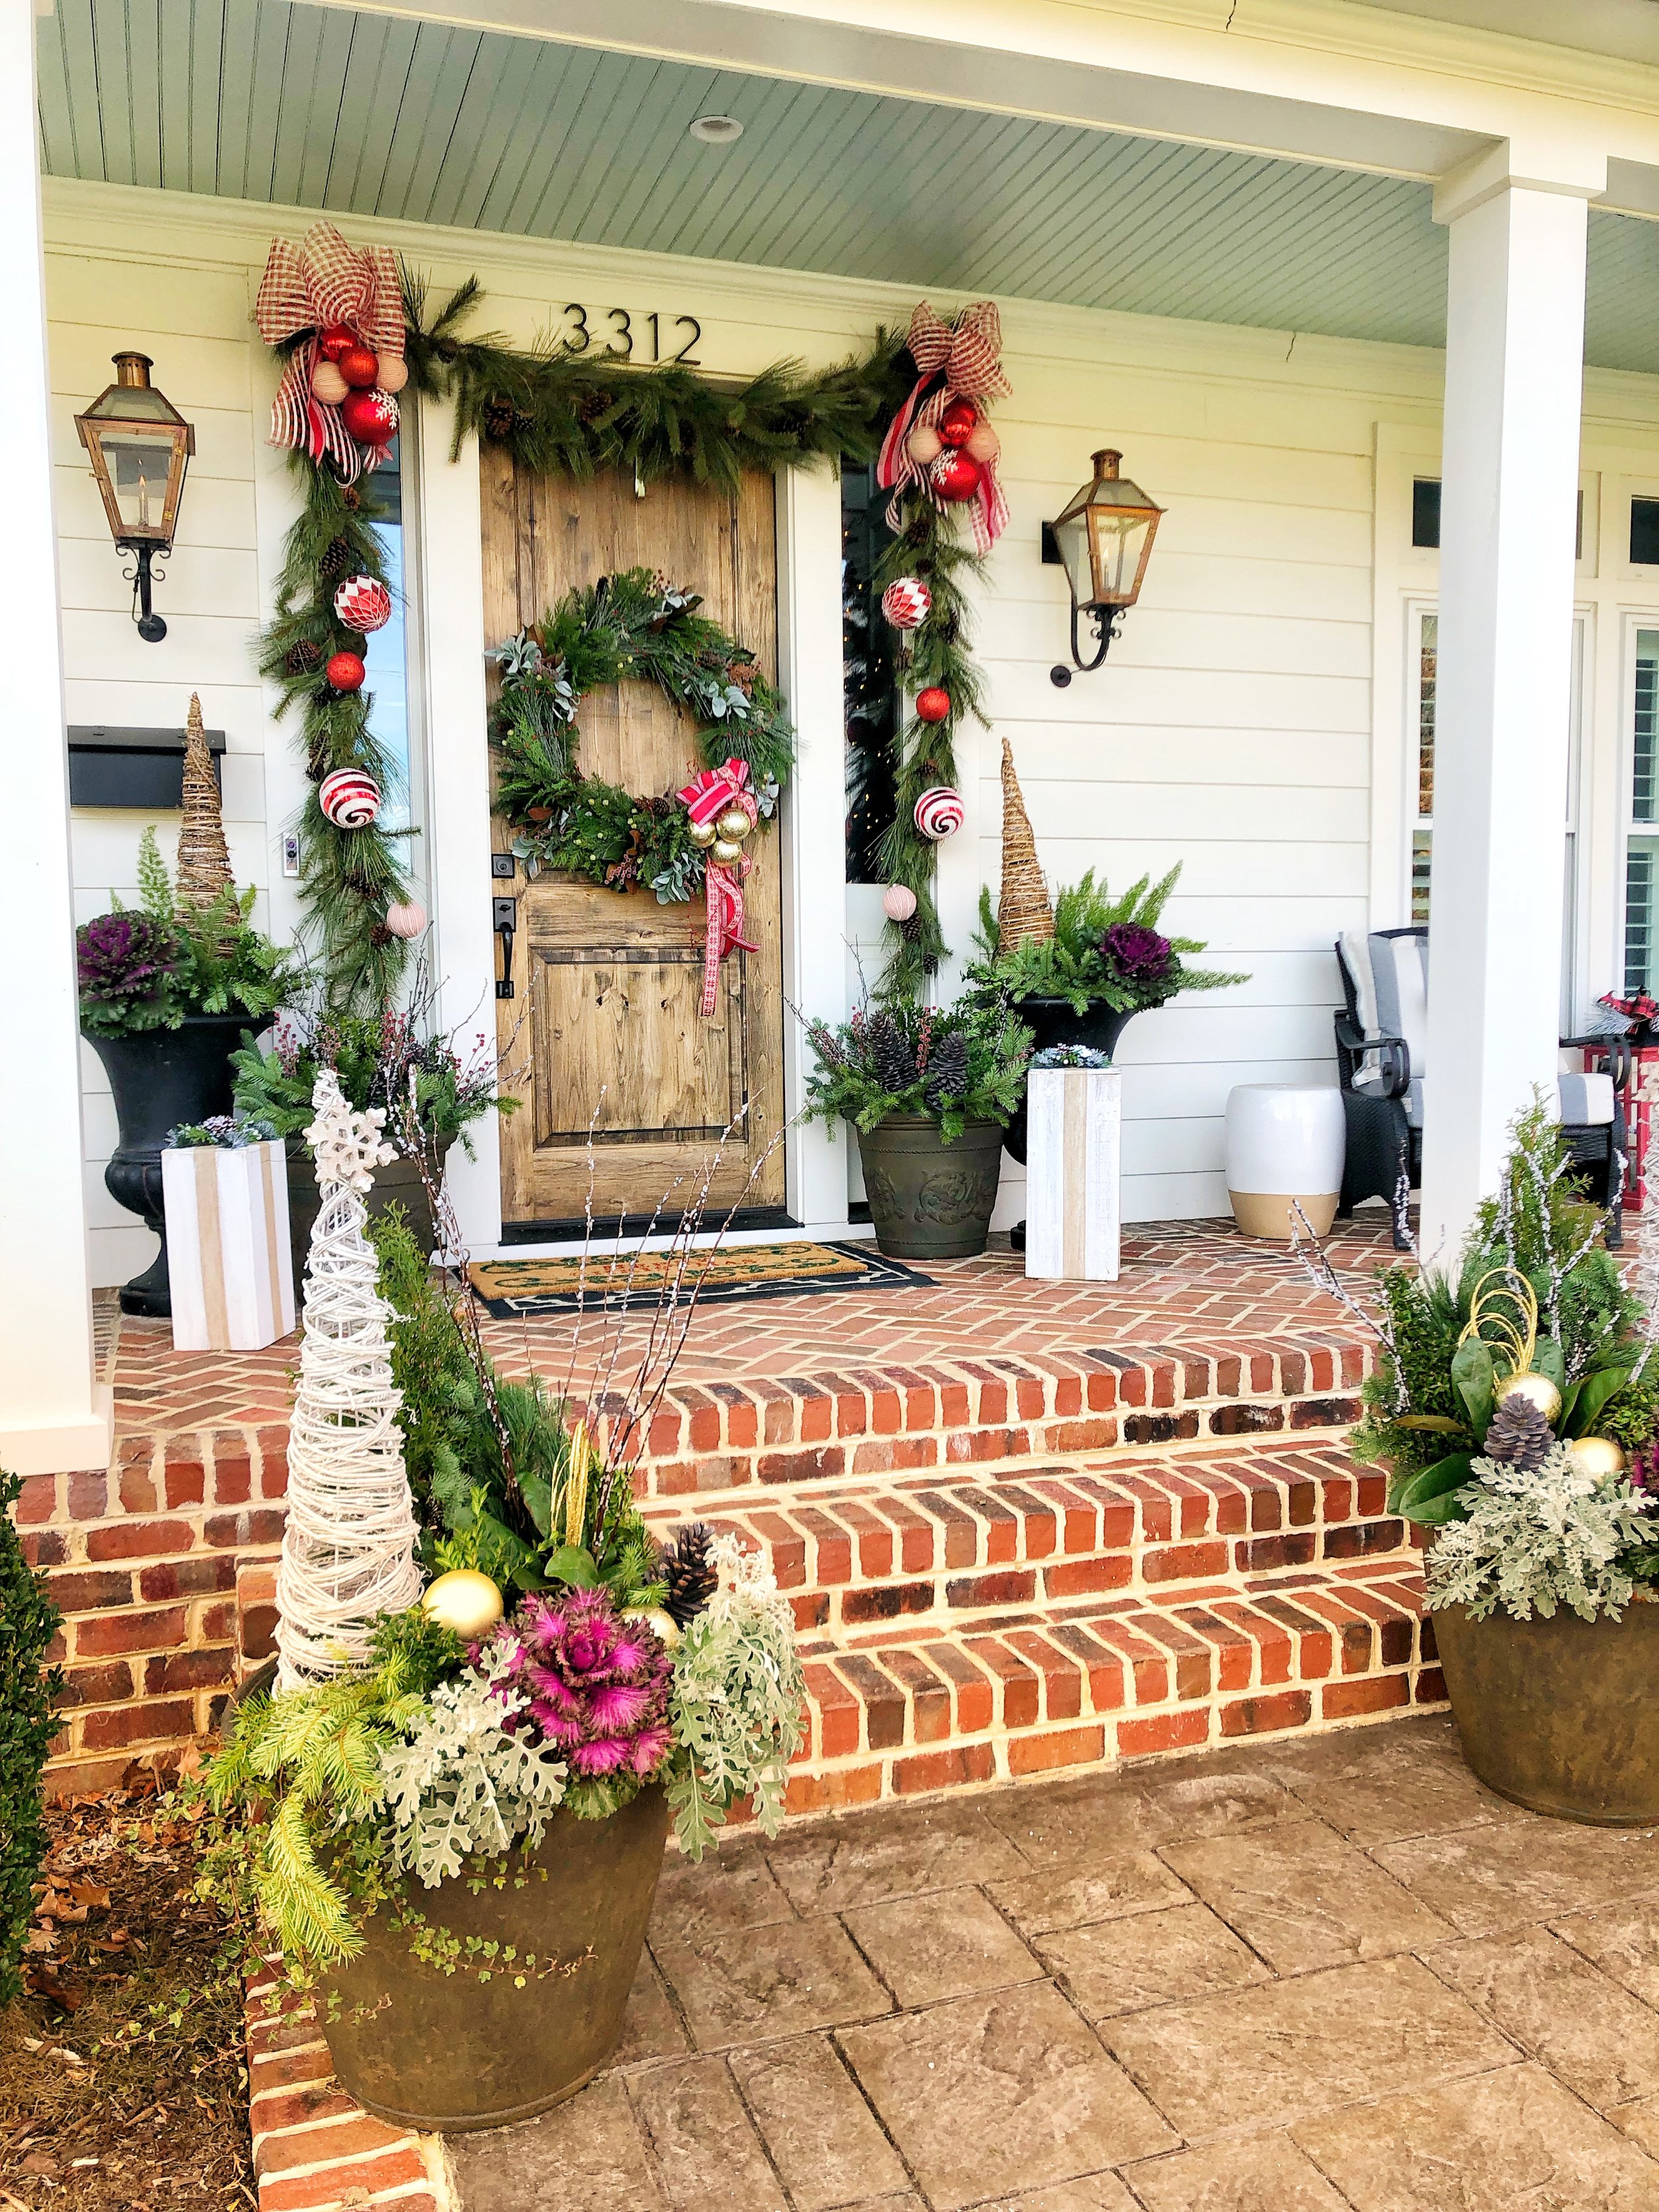 Seasonal porch decor by Su Su's Petals in RIchmond VA can help you get your porch ready for the season